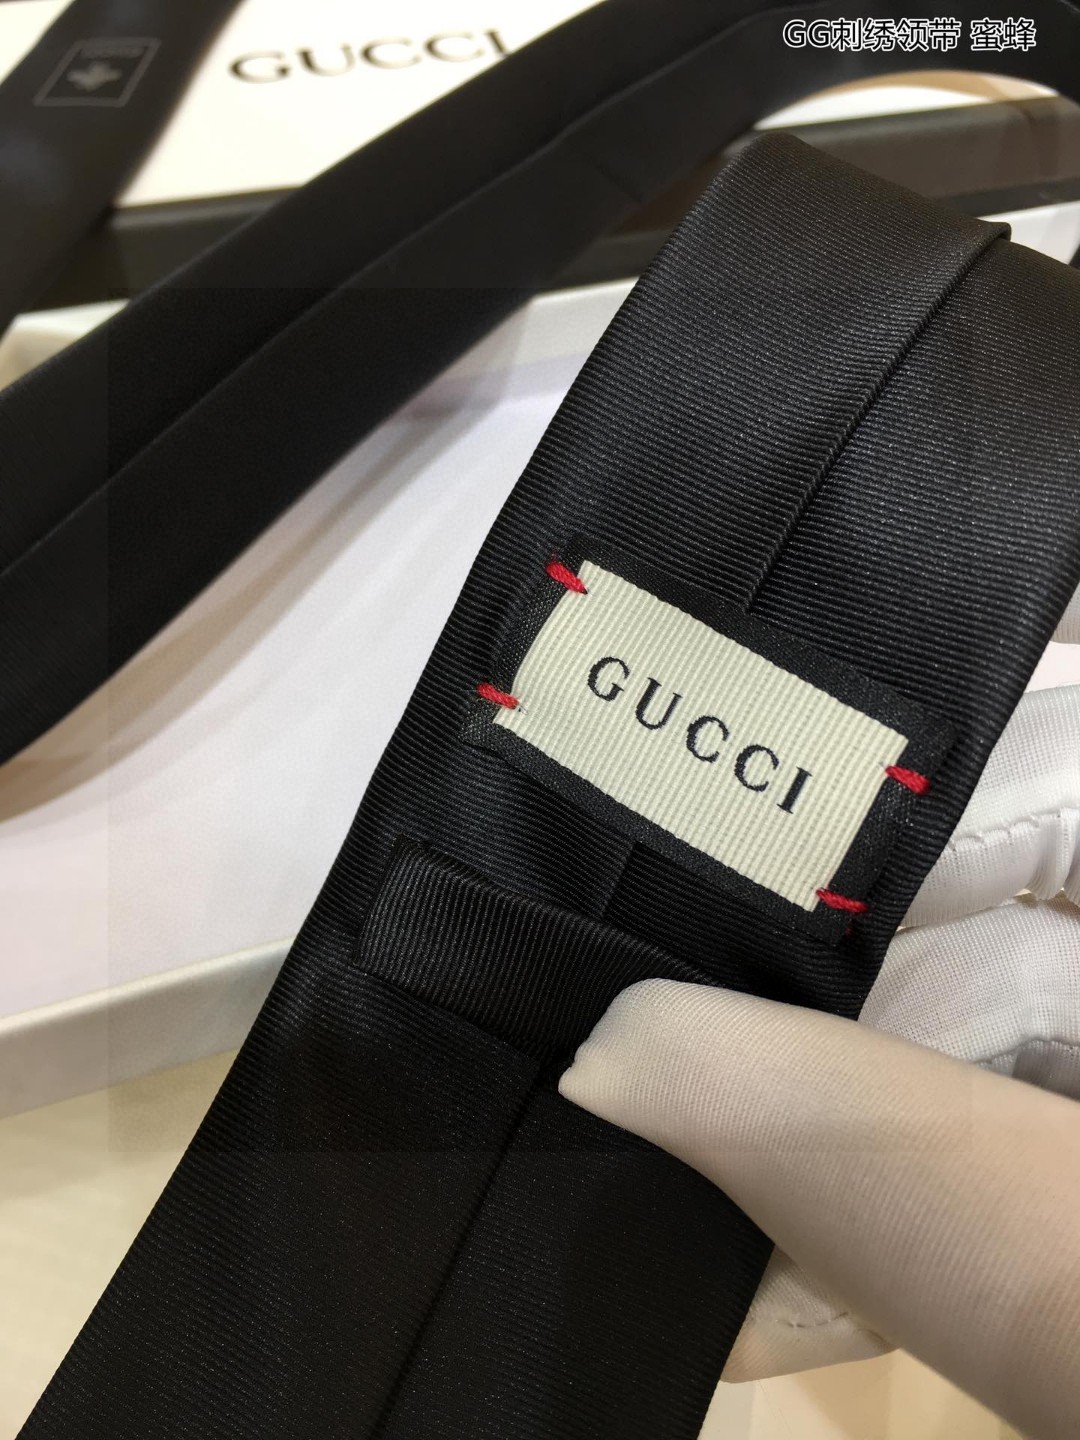 特价G家男士领带系列蜜蜂领带GG刺绣领带稀有采用经典主题动物绣花展现精湛手工与时尚优雅的理想选择这款领带